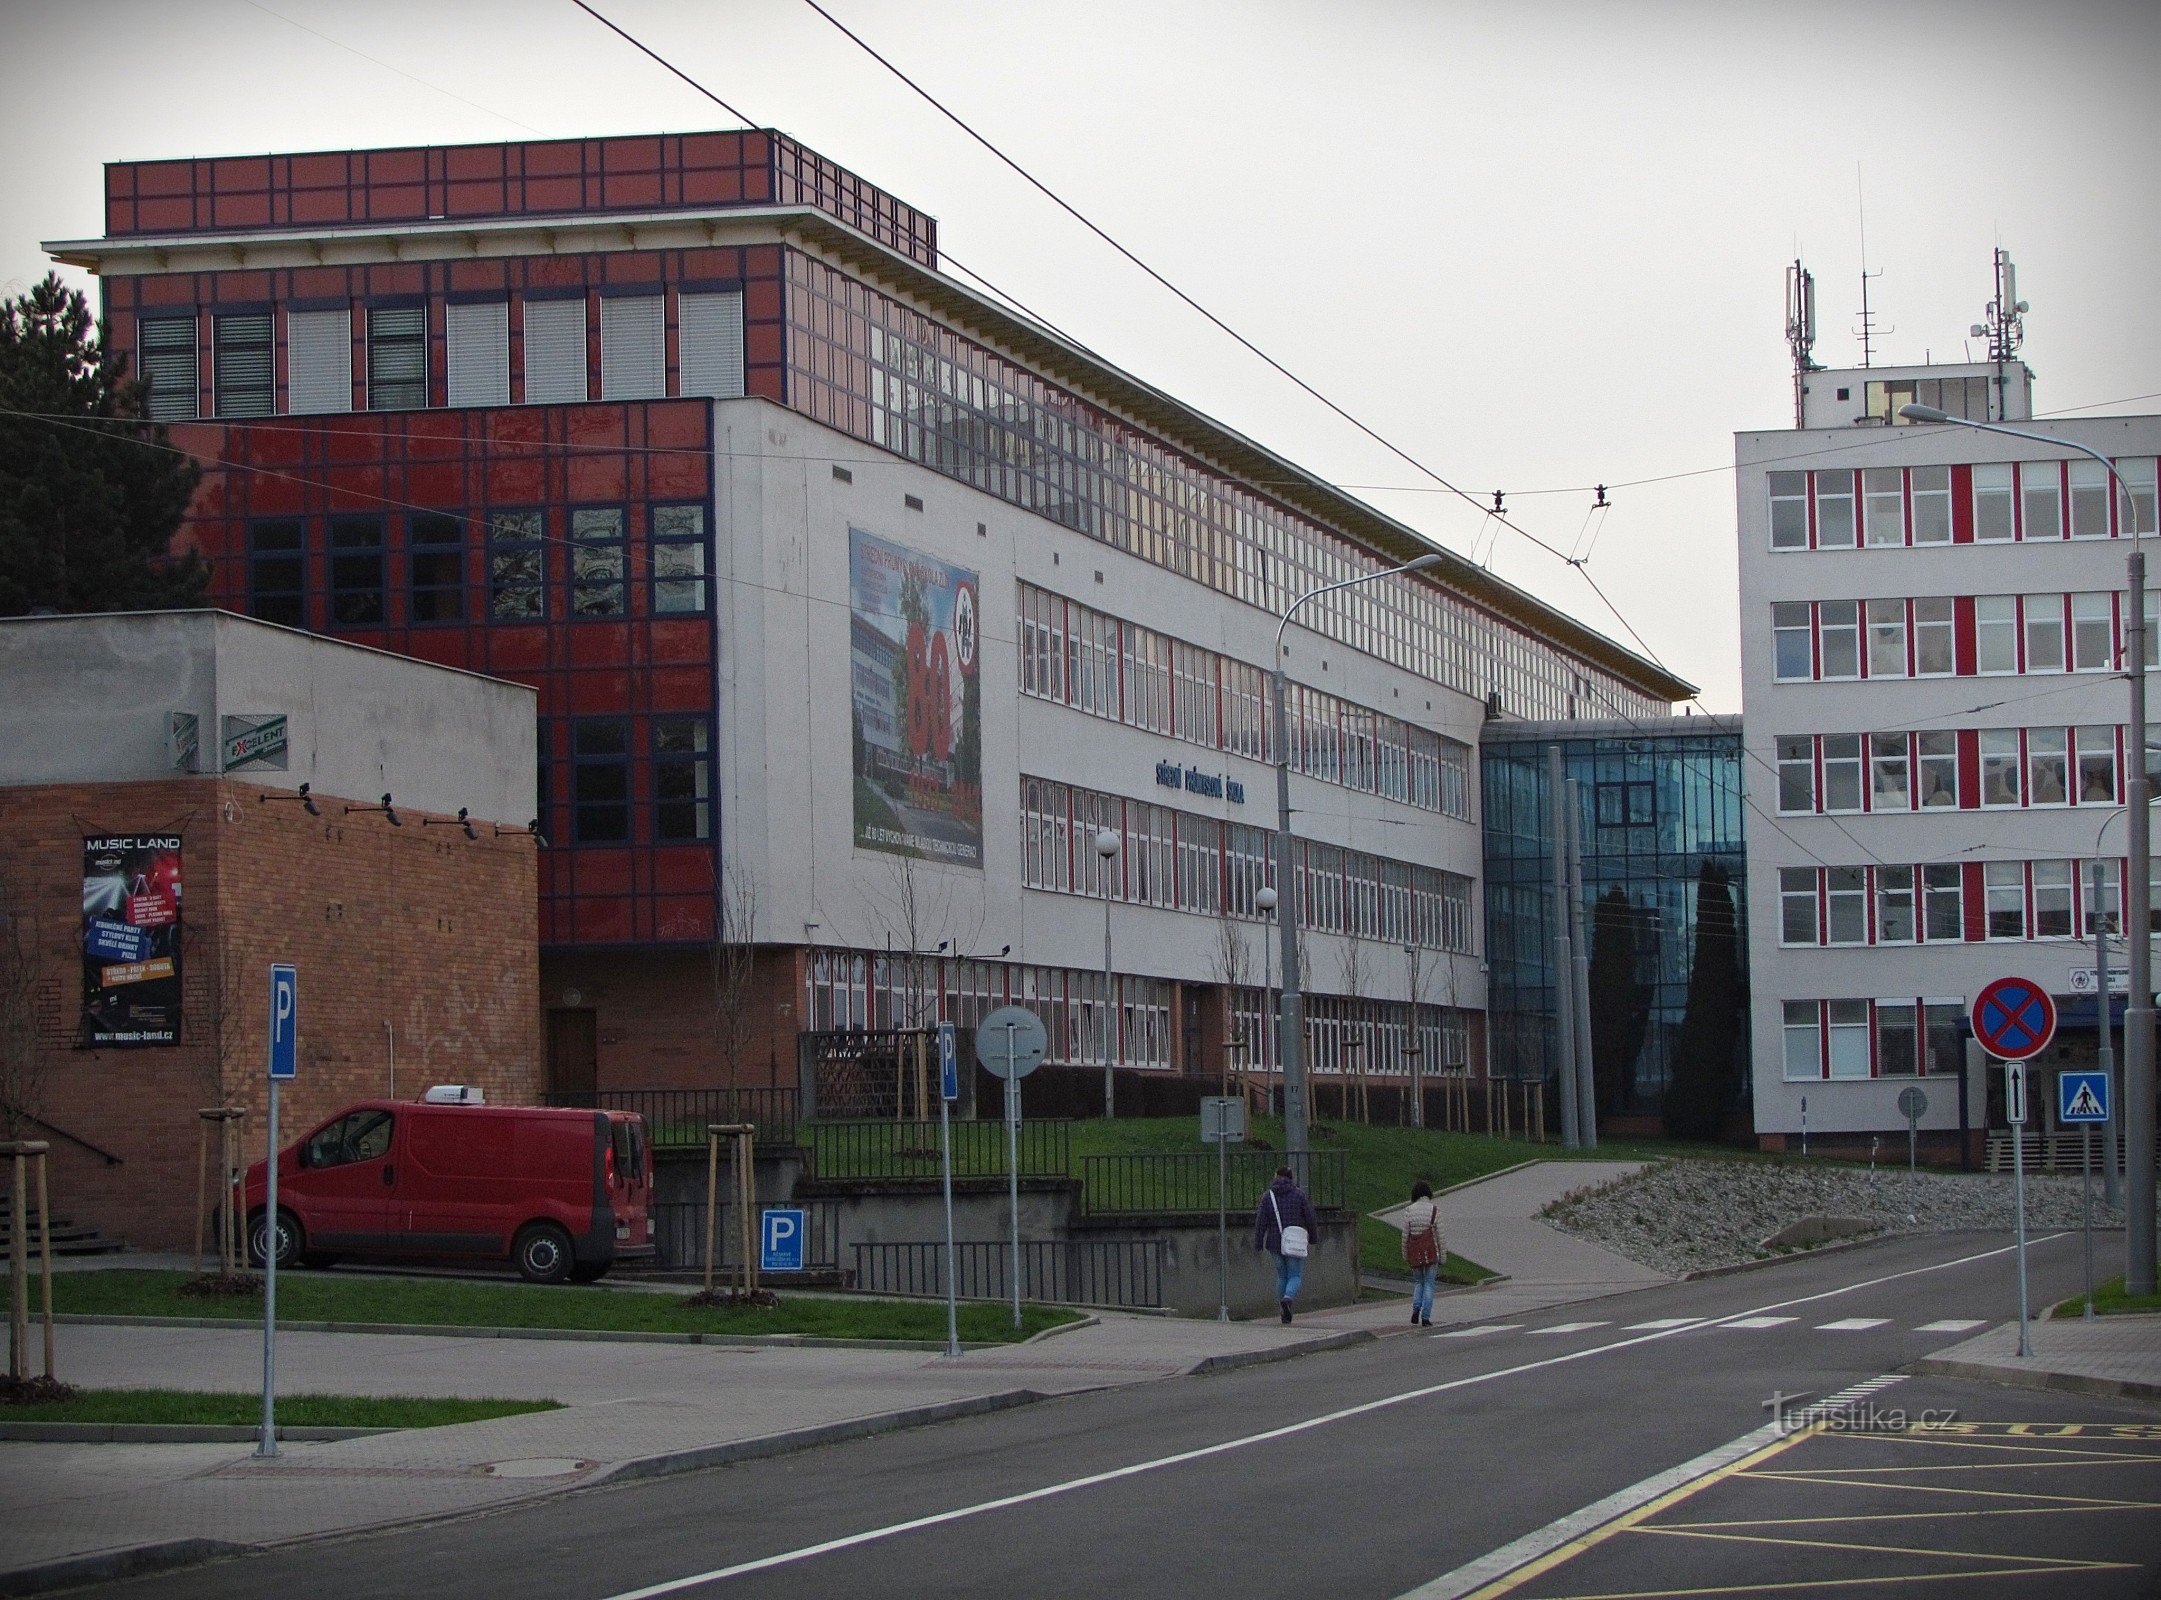 Zlín - byggnader av Secondary Industrial School